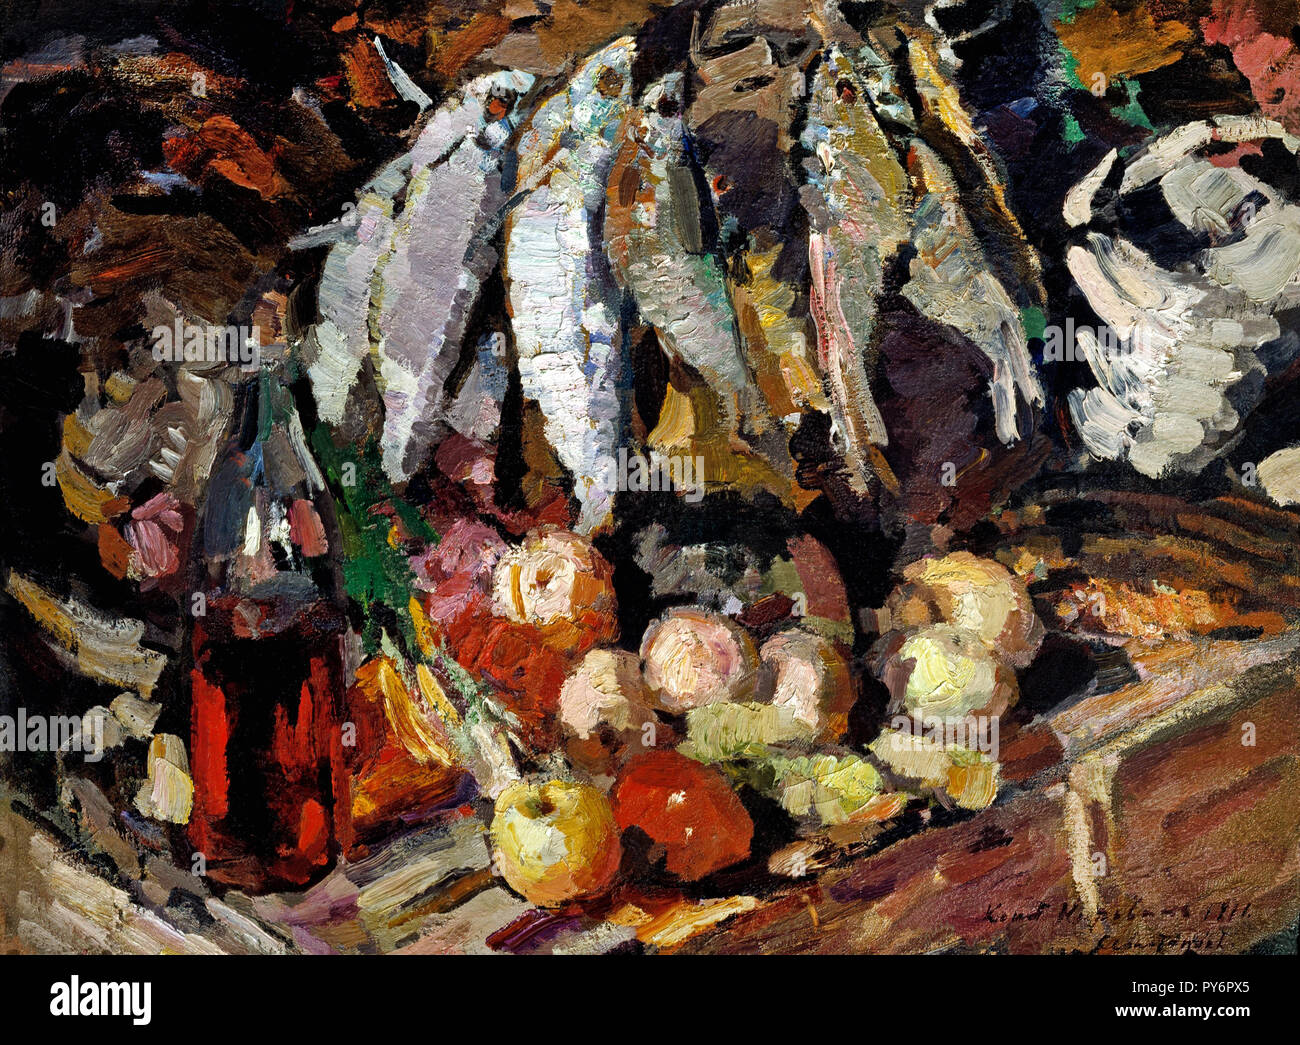 Konstantin Korovin, Fisch, Wein, Obst, 1916 Öl auf Leinwand, Tretjakow-Galerie, Moskau, Russland. Stockfoto